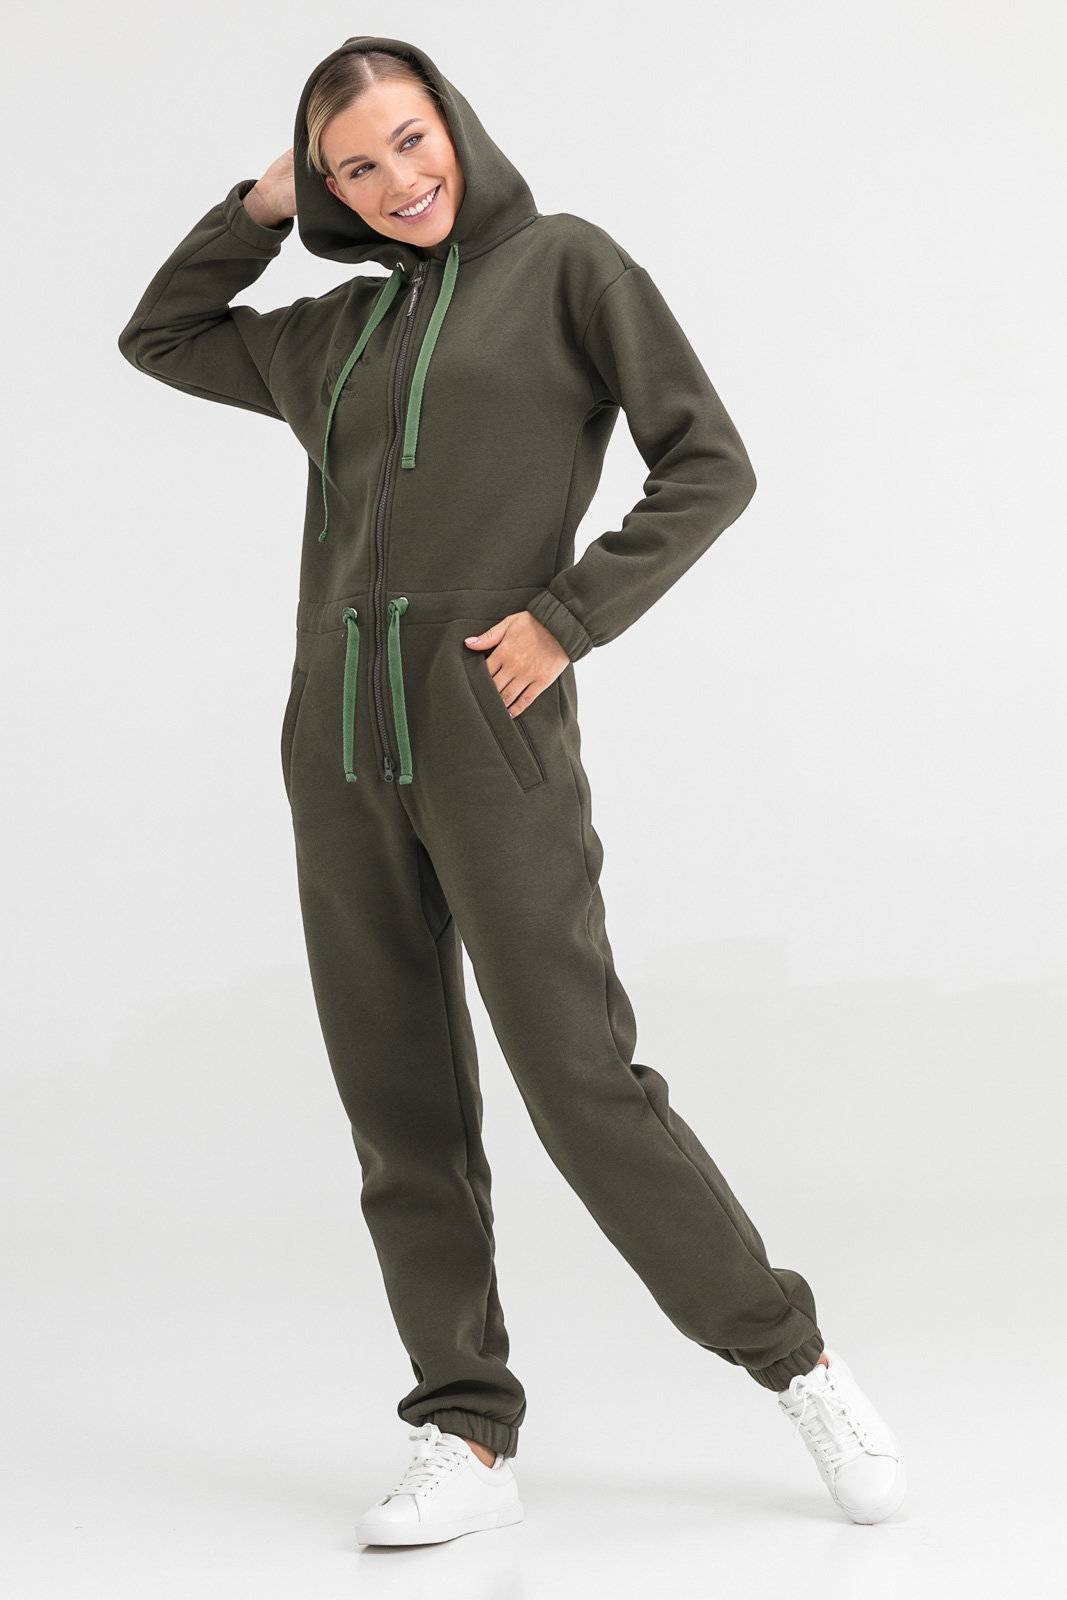 RCF старт зелёный флисовый костюм женский. Комбинезон женский спортивный. Флисовые спортивные костюмы женские. Костюм флисовый женский.